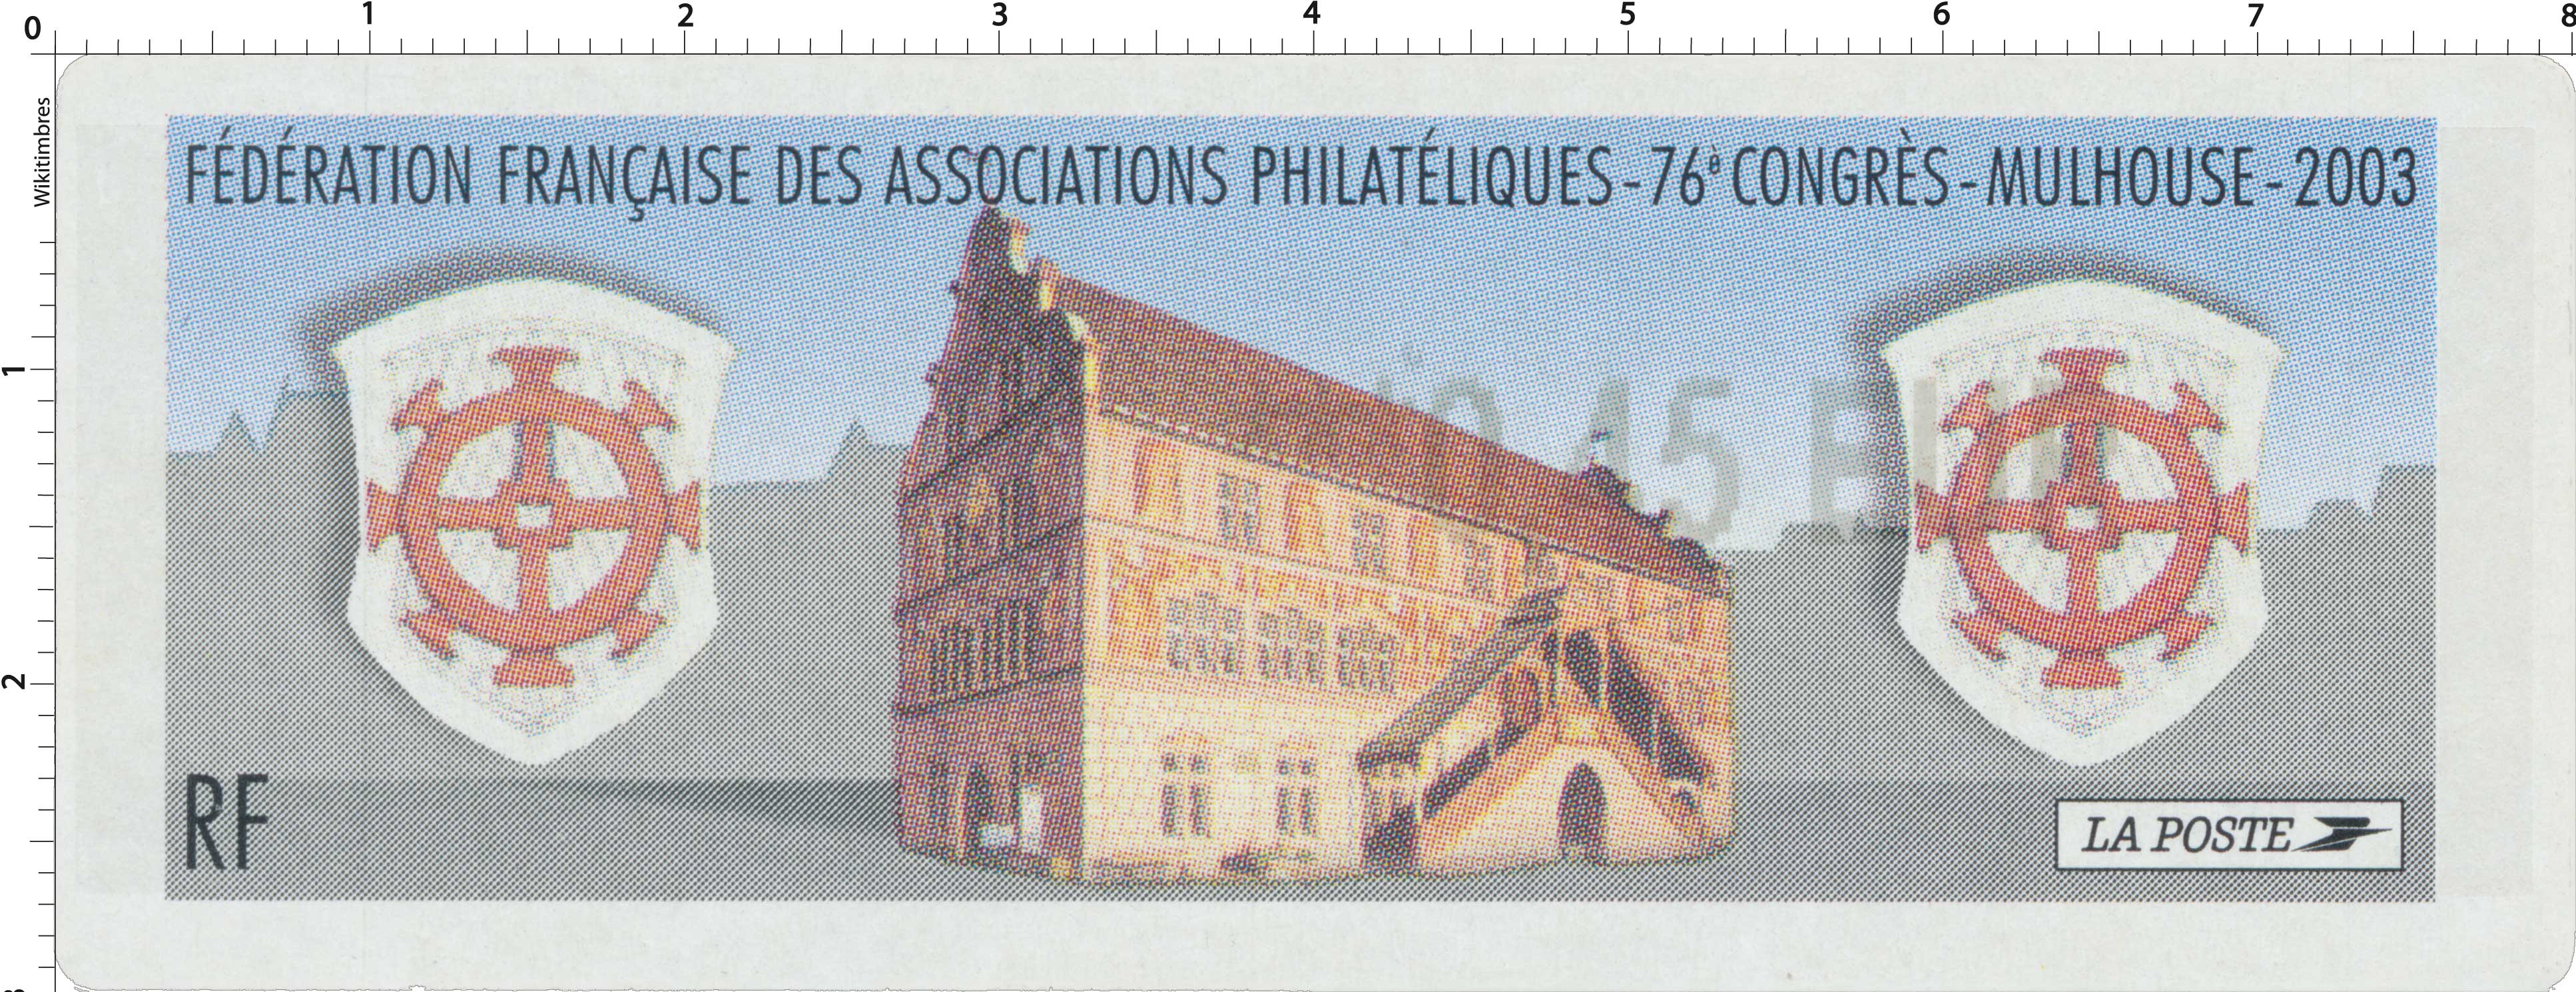 76ème congrès de la FFAP - Mulhouse